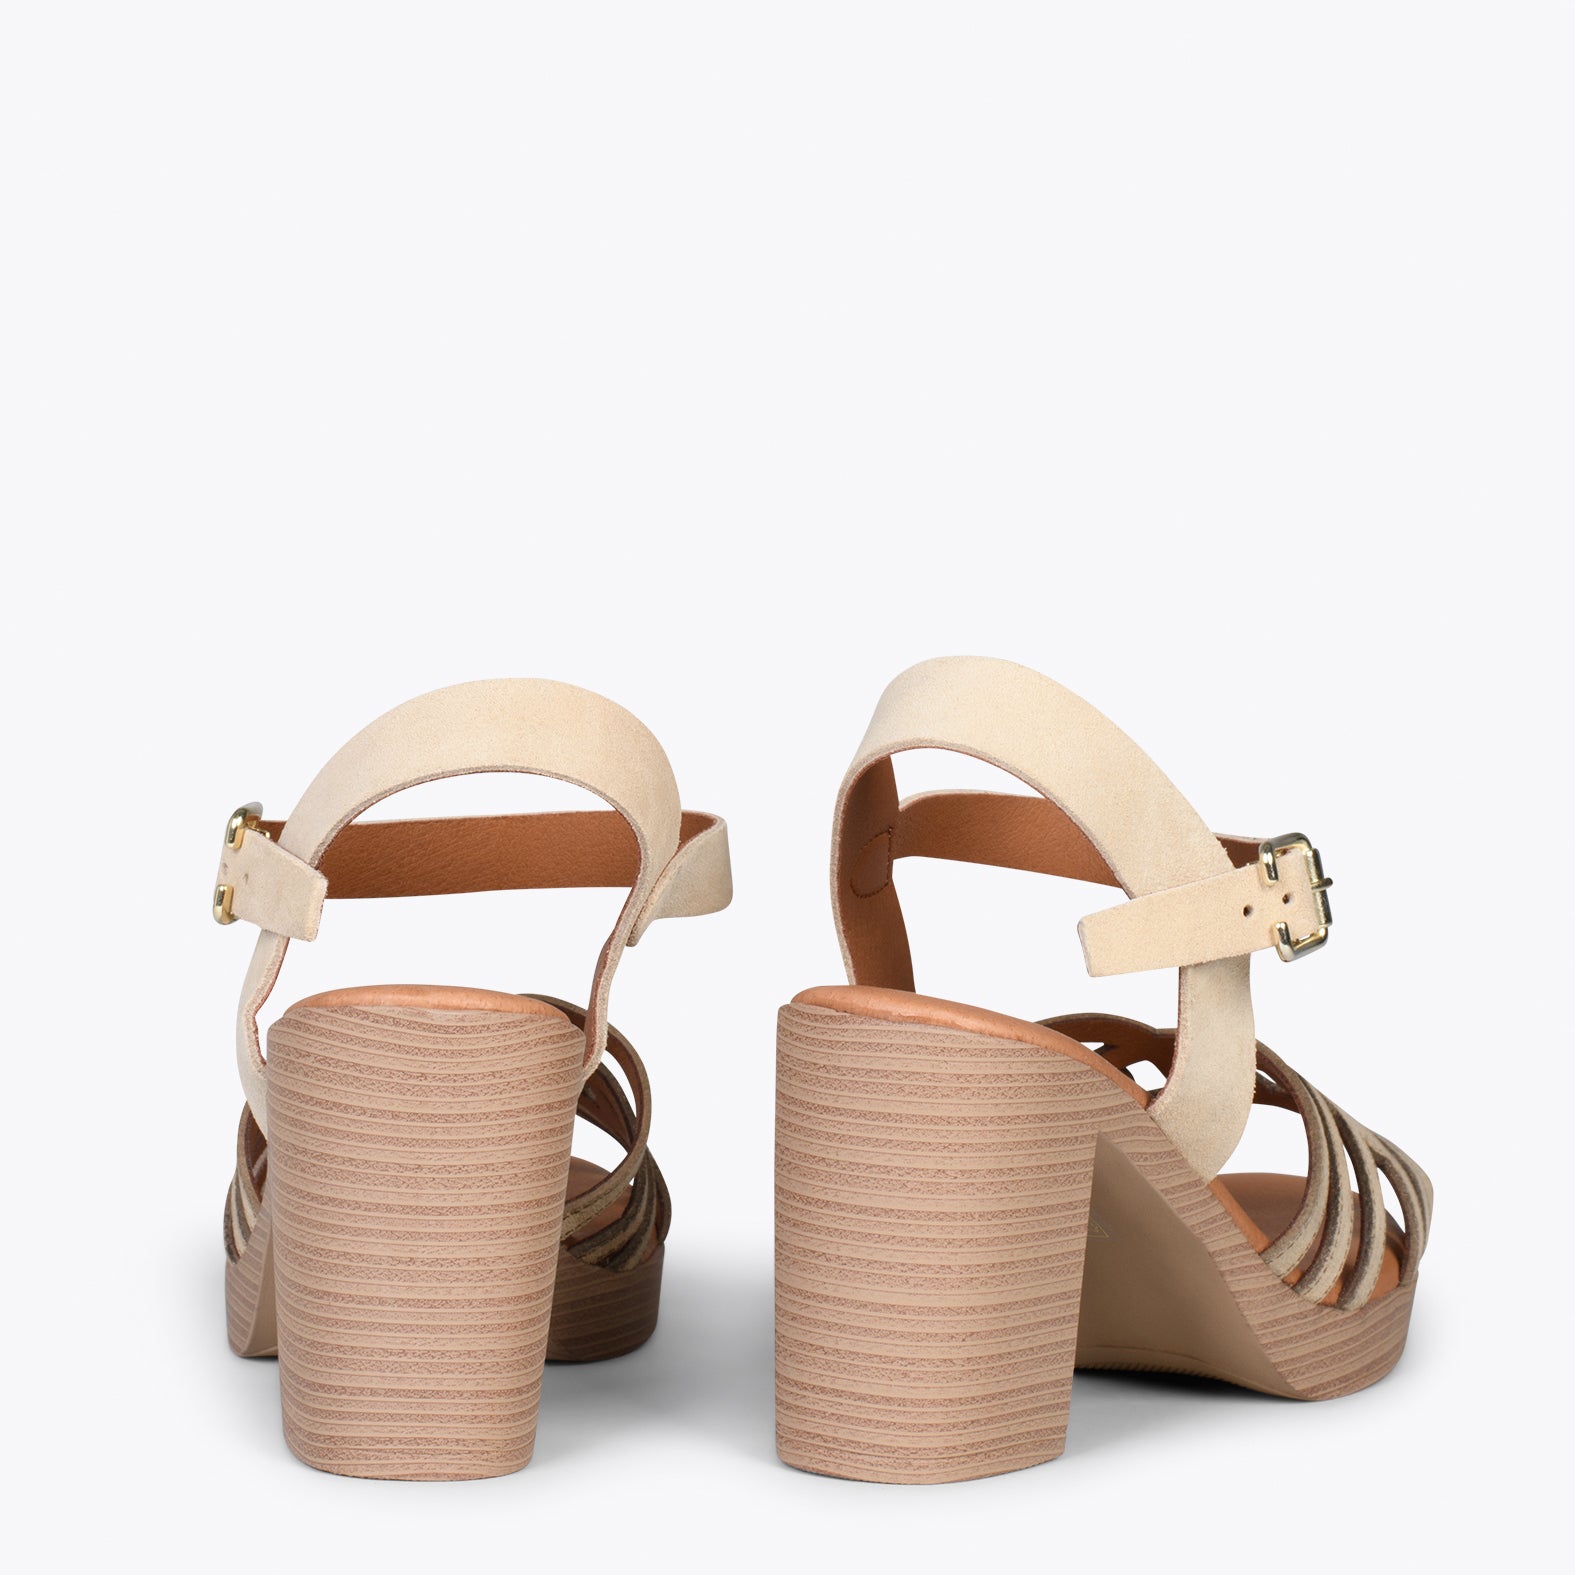 CIBELES – BEIGE wooden block heel sandal